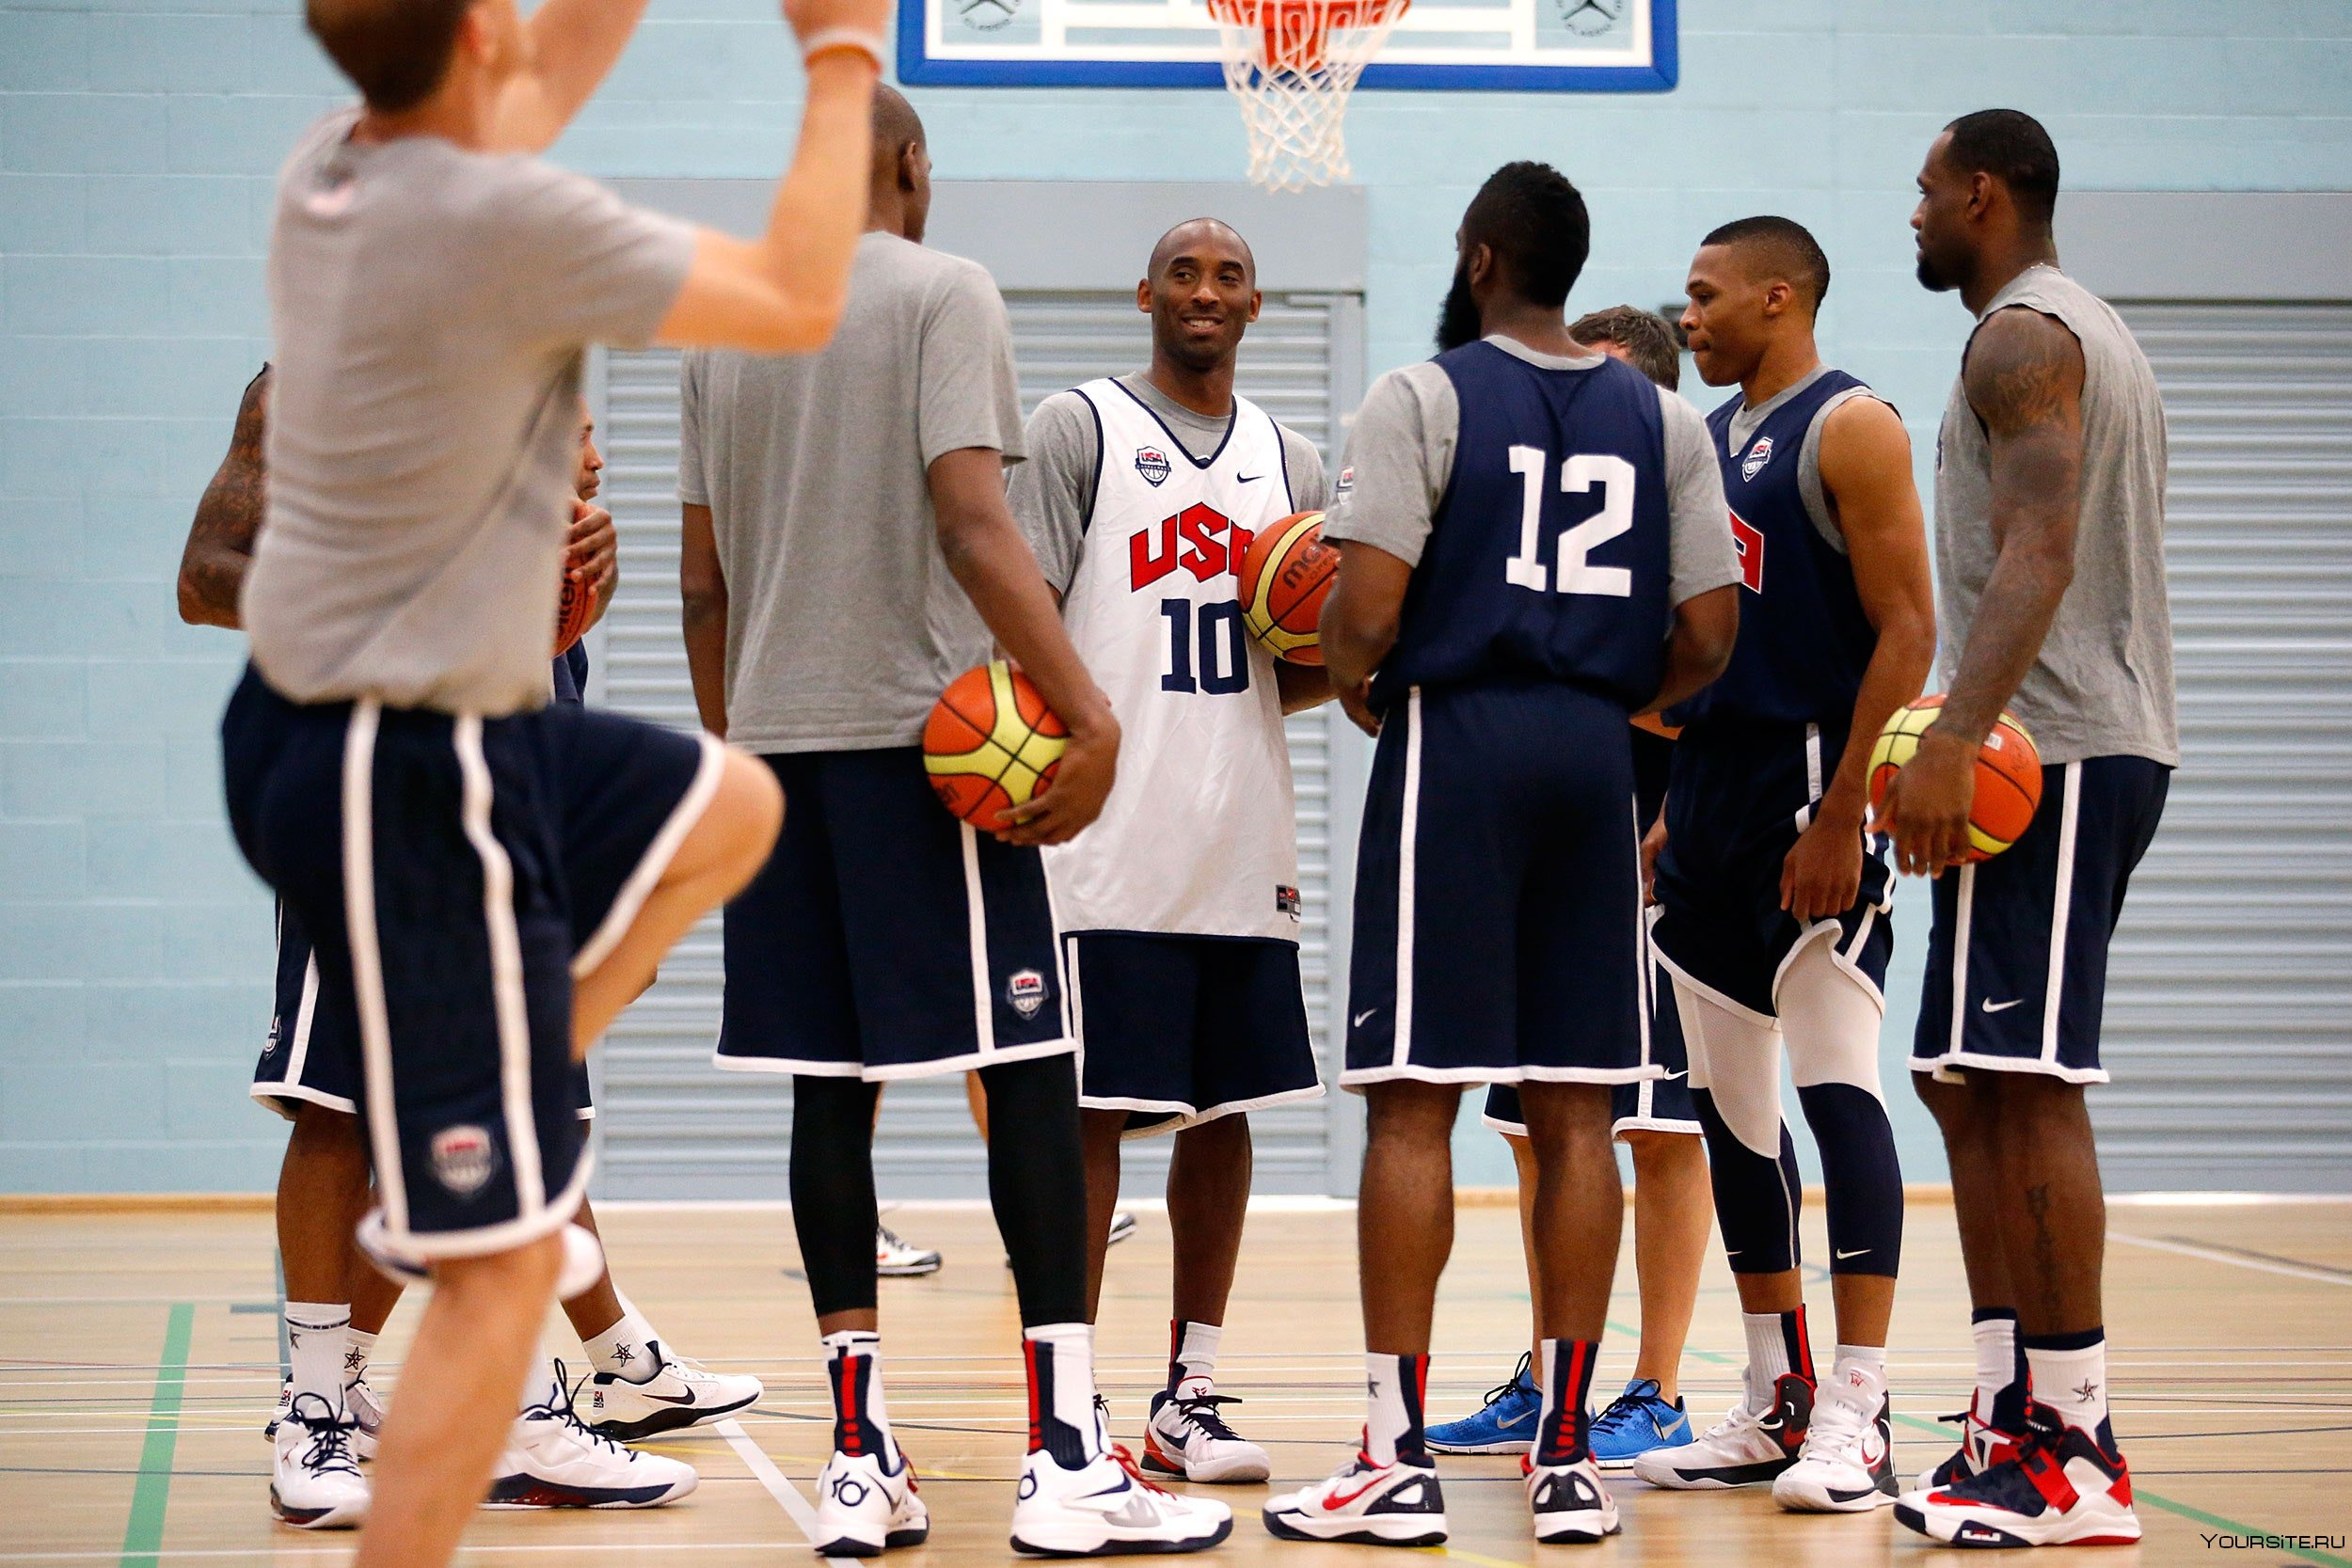 Сильные баскетбольные команды. Команда США НБА 2012 Коби. Dream Team баскетбол с Коби Брайант. Американский школьный баскетбол. Американские баскетболисты.